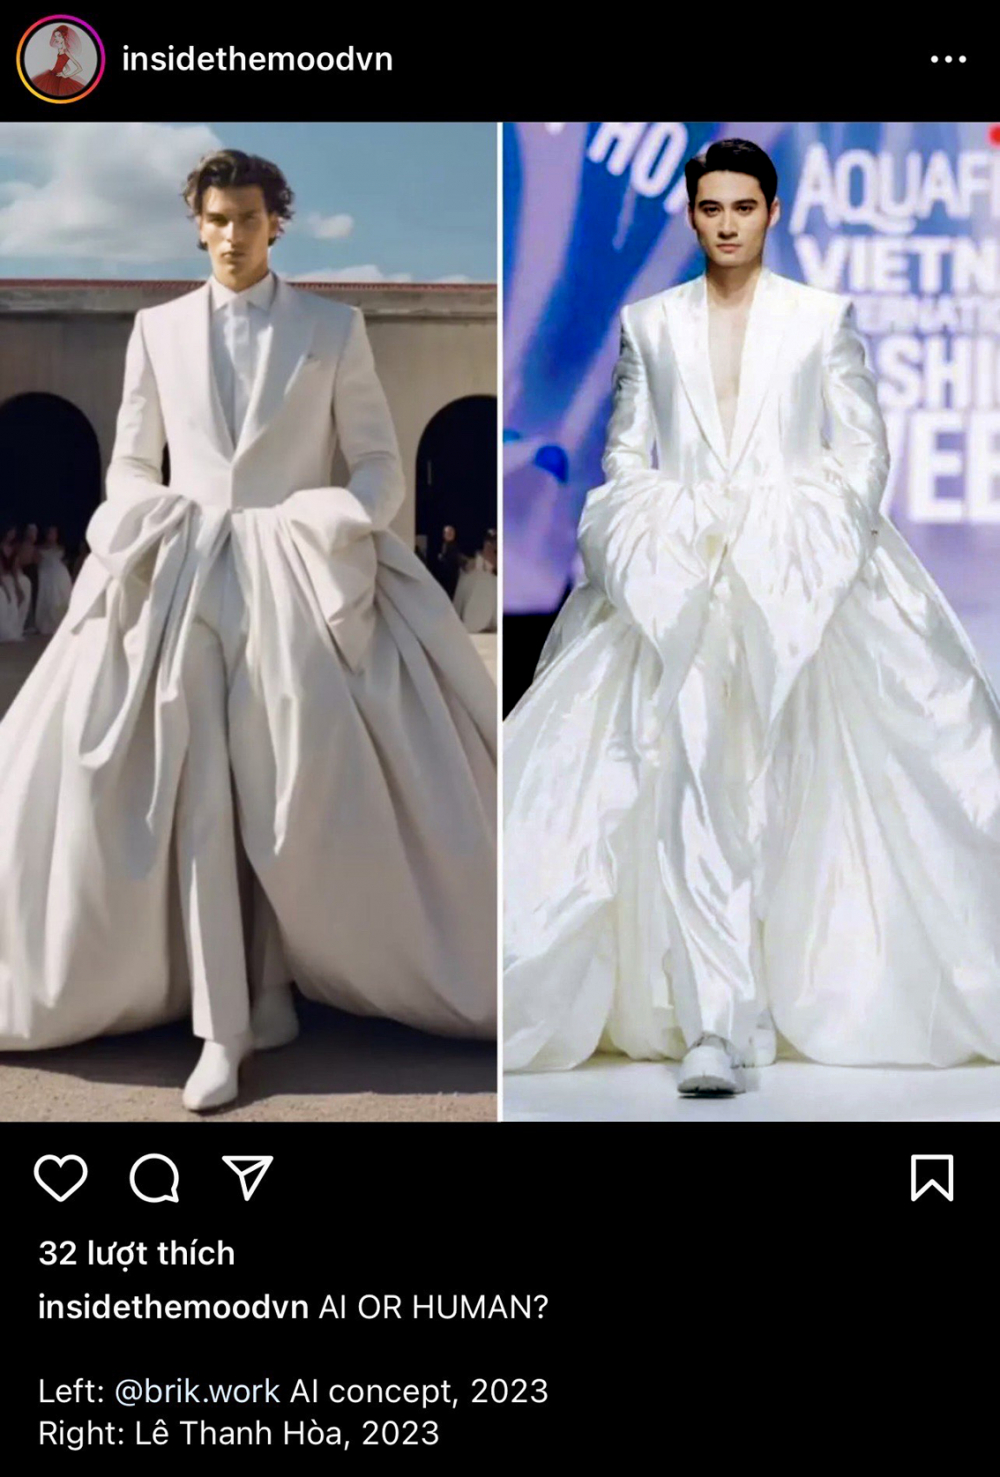 Trang Insidethemoodvn so sánh mẫu thiết kế của Lê Thanh Hòa (phải) trong bộ sưu tập Hoa trên sóng nước (tháng 7/2023) và ý tưởng trong bộ sưu tập trang phục cưới cho nam của thương hiệu Brik Studio, phát triển bằng công nghệ AI (giới thiệu hồi tháng 6/2023)